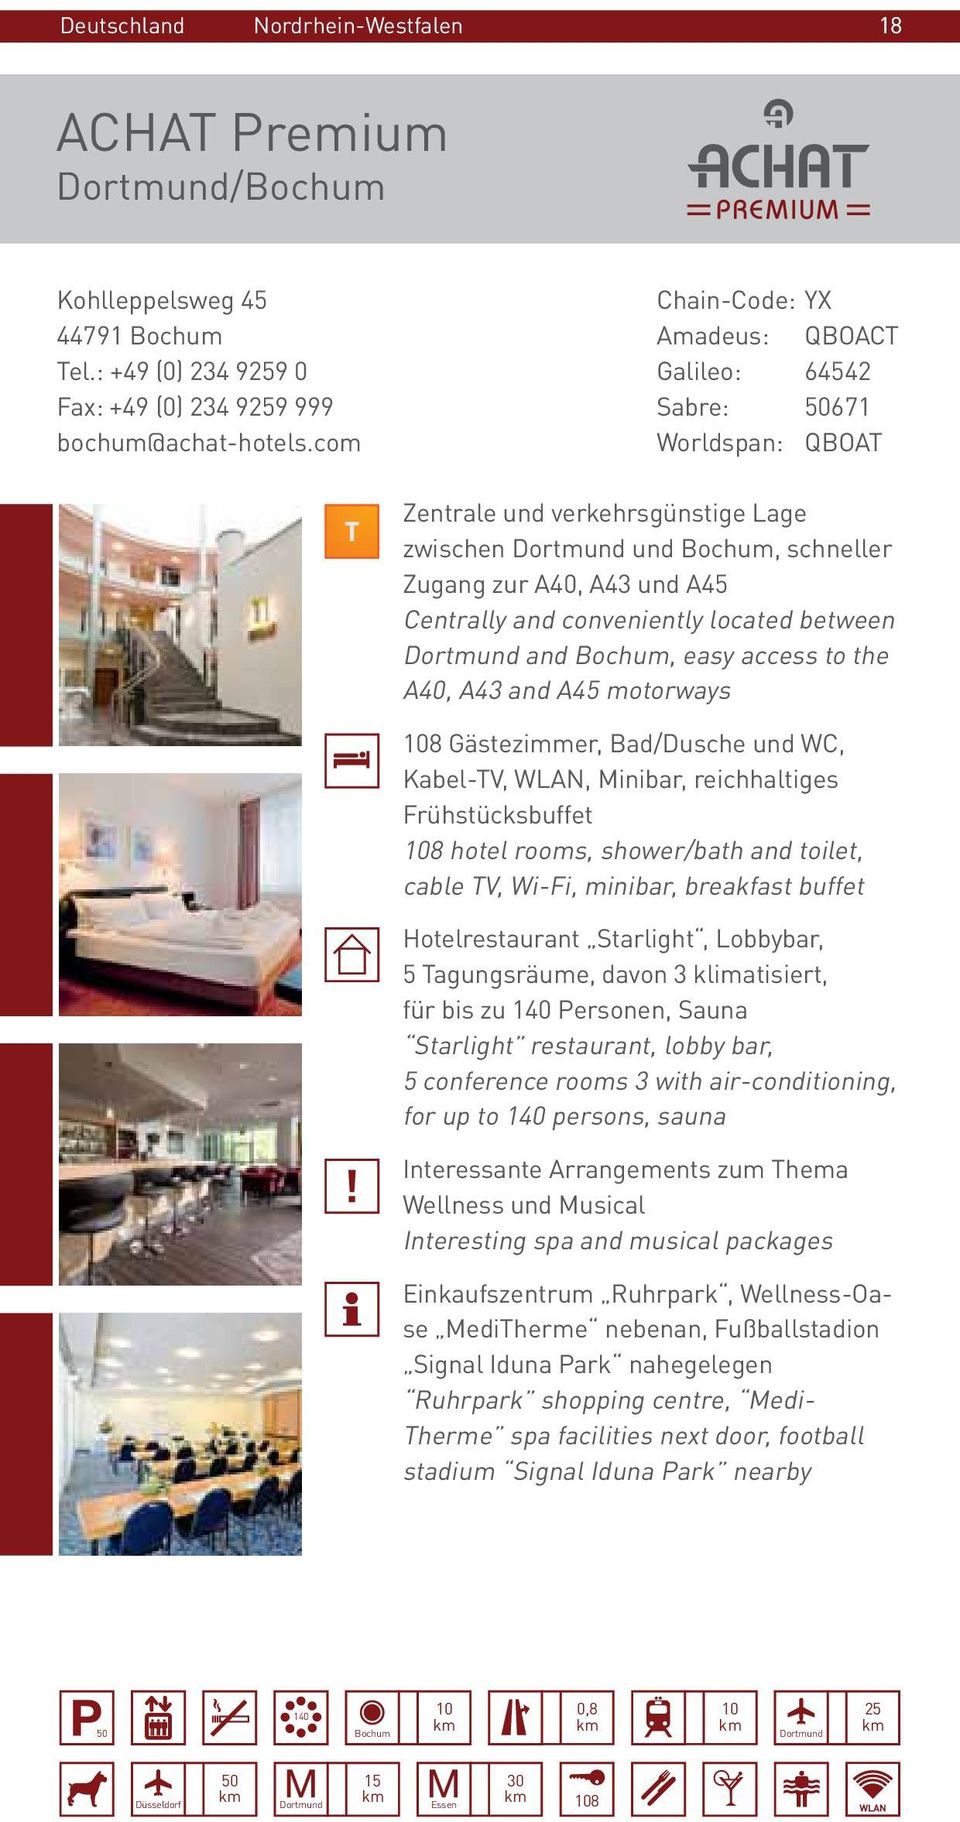 located between Dortmund and Bochum, easy access to the A40, A43 and A45 motorways 108 Gästezimmer, Bad/Dusche und WC, Kabel-TV, WLAN, Minibar, reichhaltiges Frühstücksbuffet 108 hotel rooms,